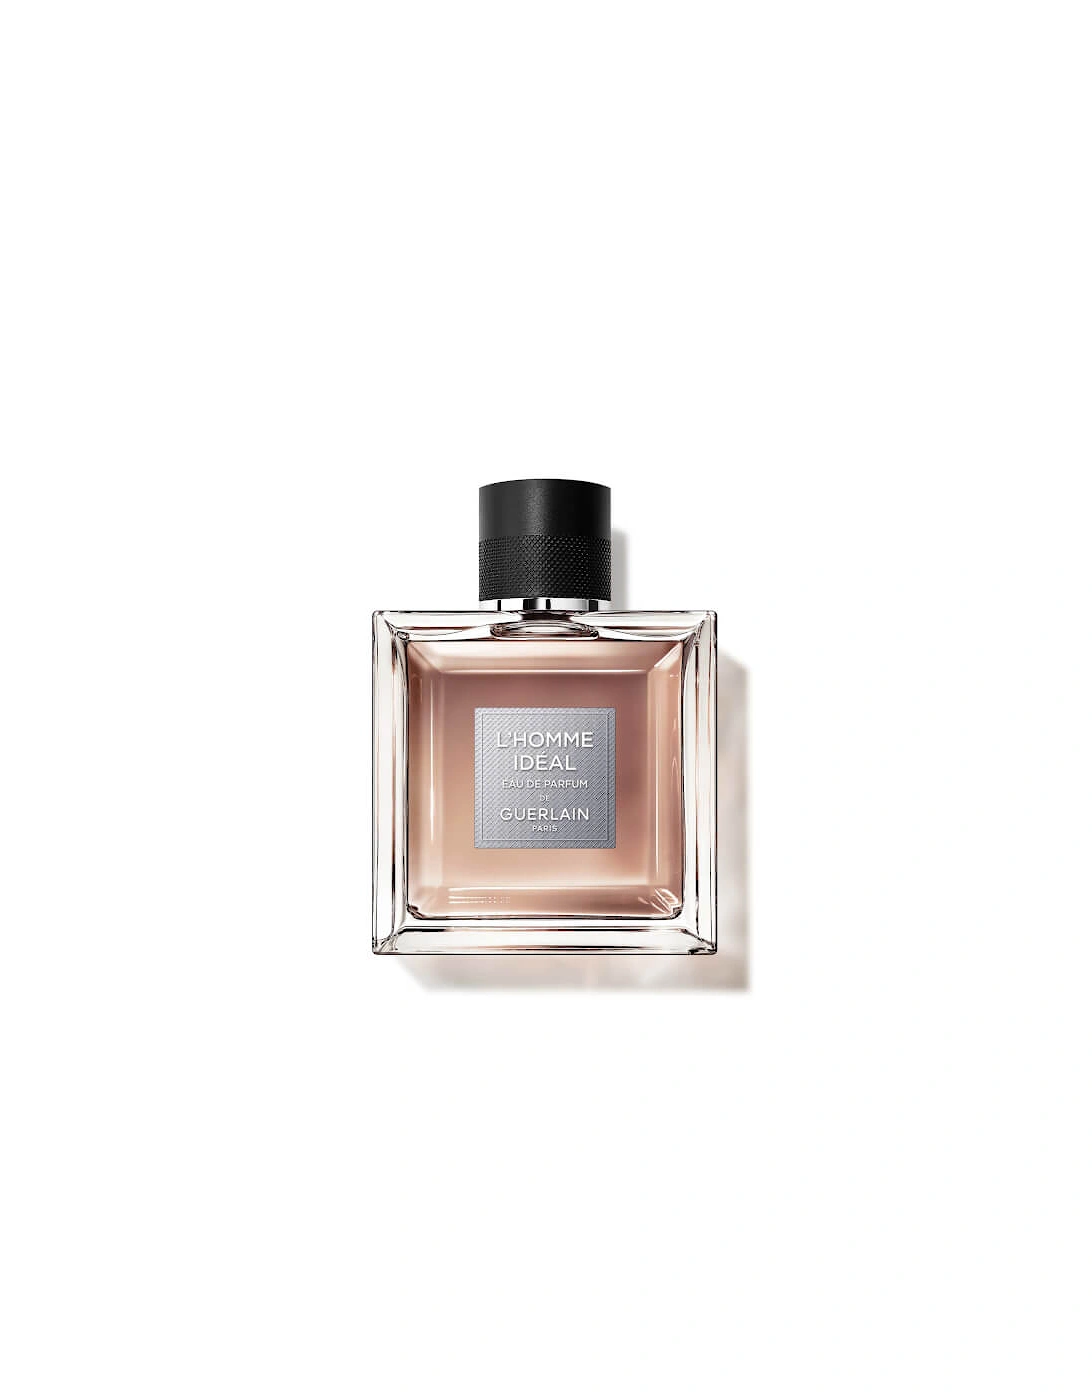 L’Homme Idéal Eau De Parfum 100ml, 2 of 1